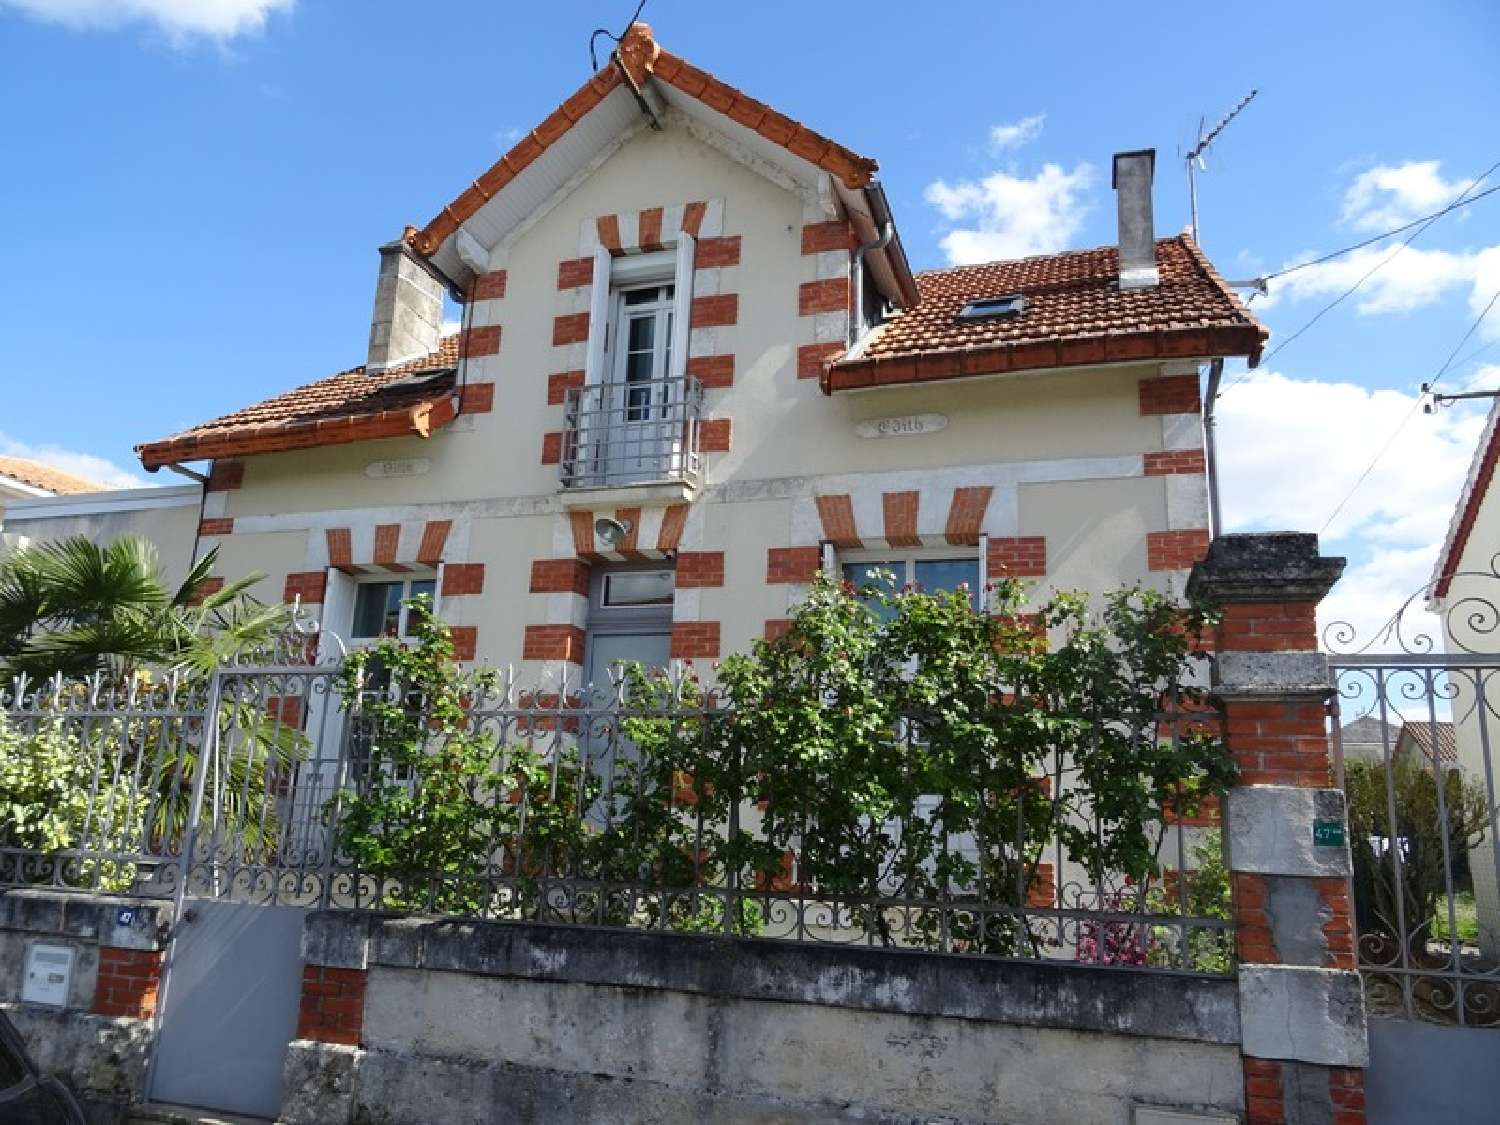  à vendre maison Gond-Pontouvre Charente 1